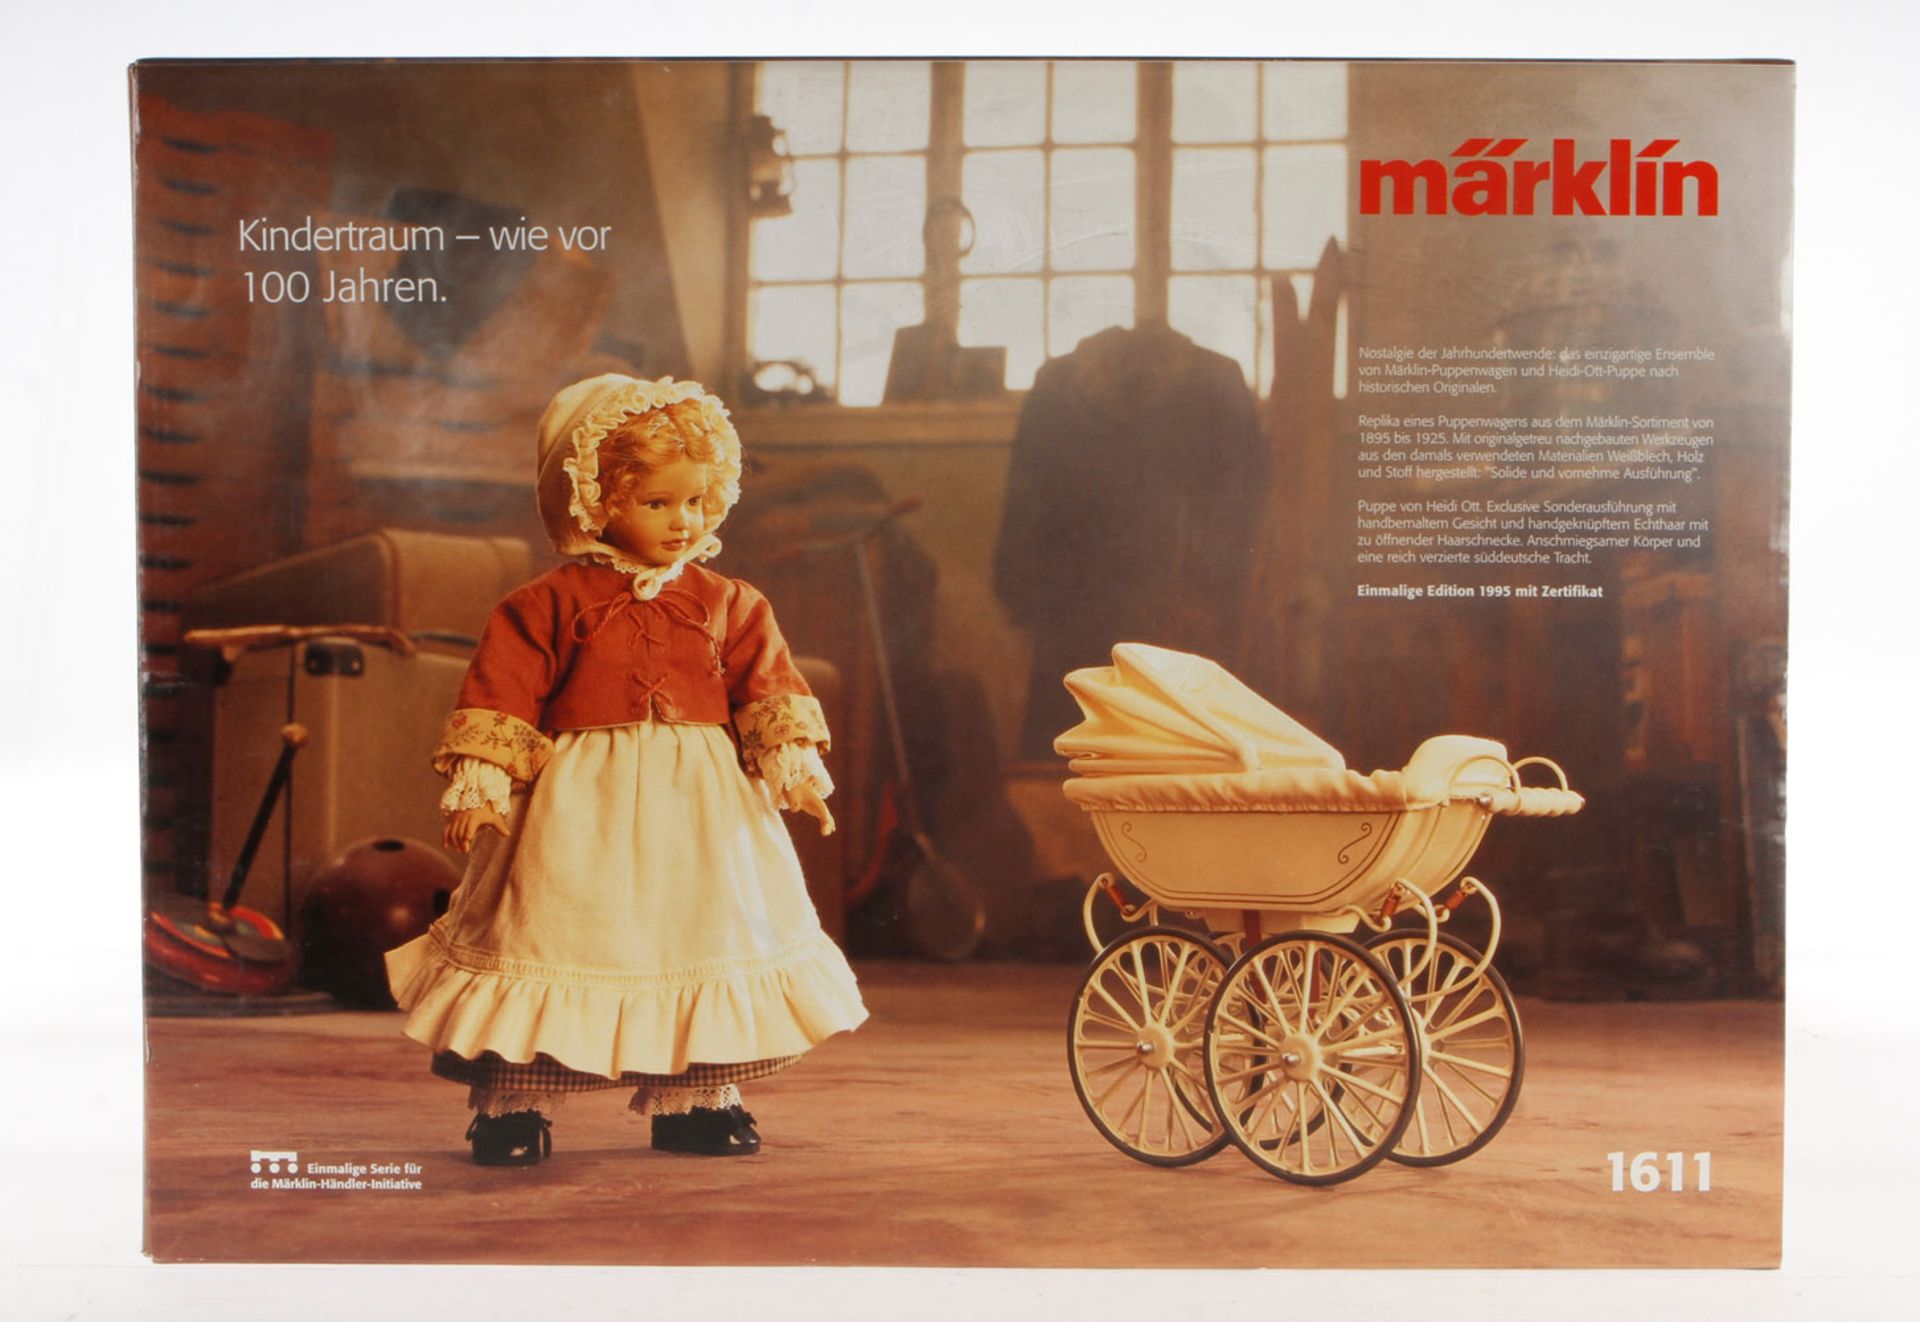 Märklin Puppenwagen mit Puppe 1611, komplett mit Zertifikat, leichte Alterungsspuren, in OVP, sehr